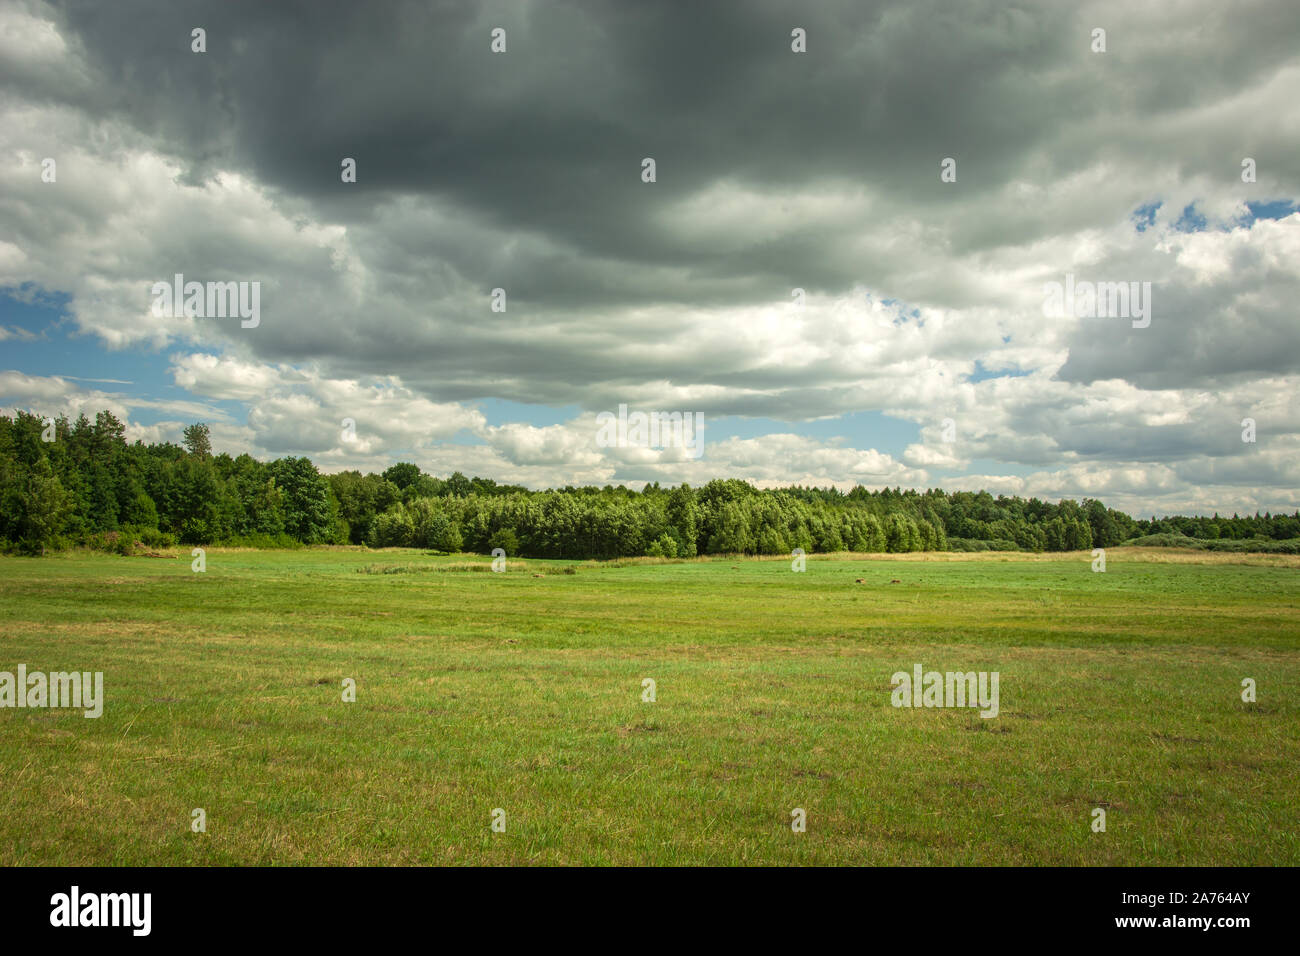 Verde prato, foresta e grigio nuvole nel cielo Foto Stock